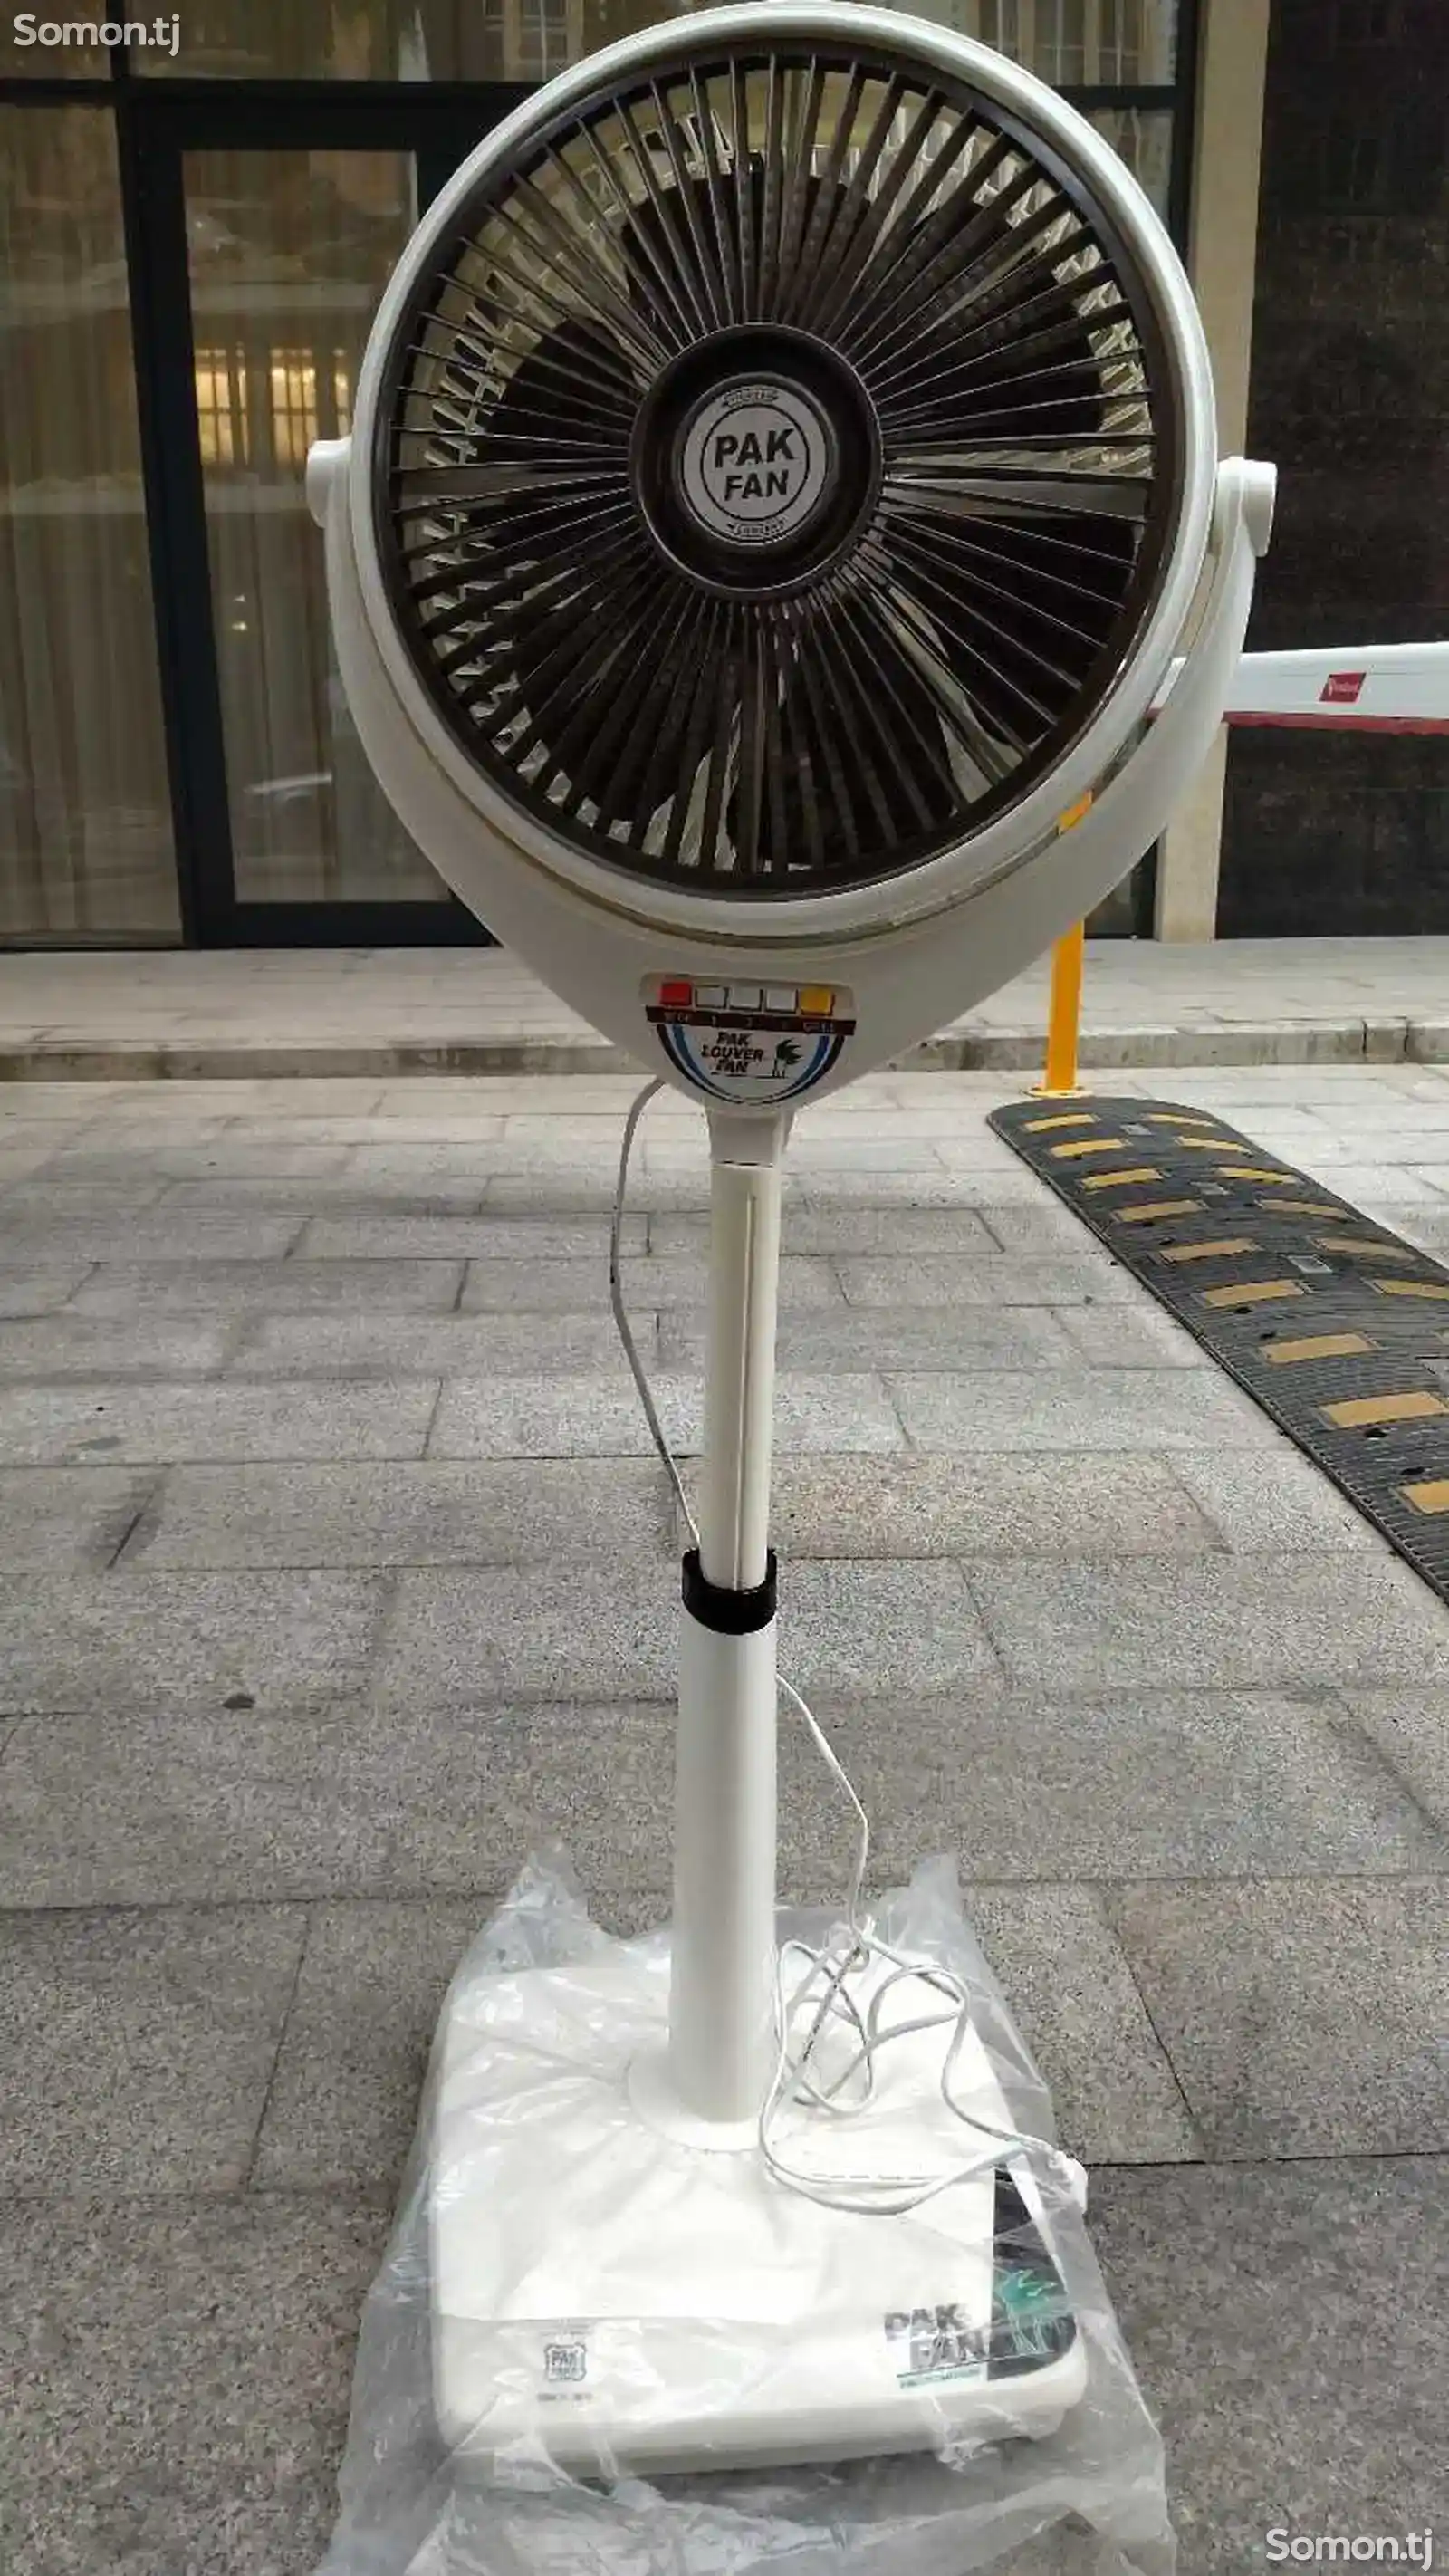 Вентилятор Pak Fan-2